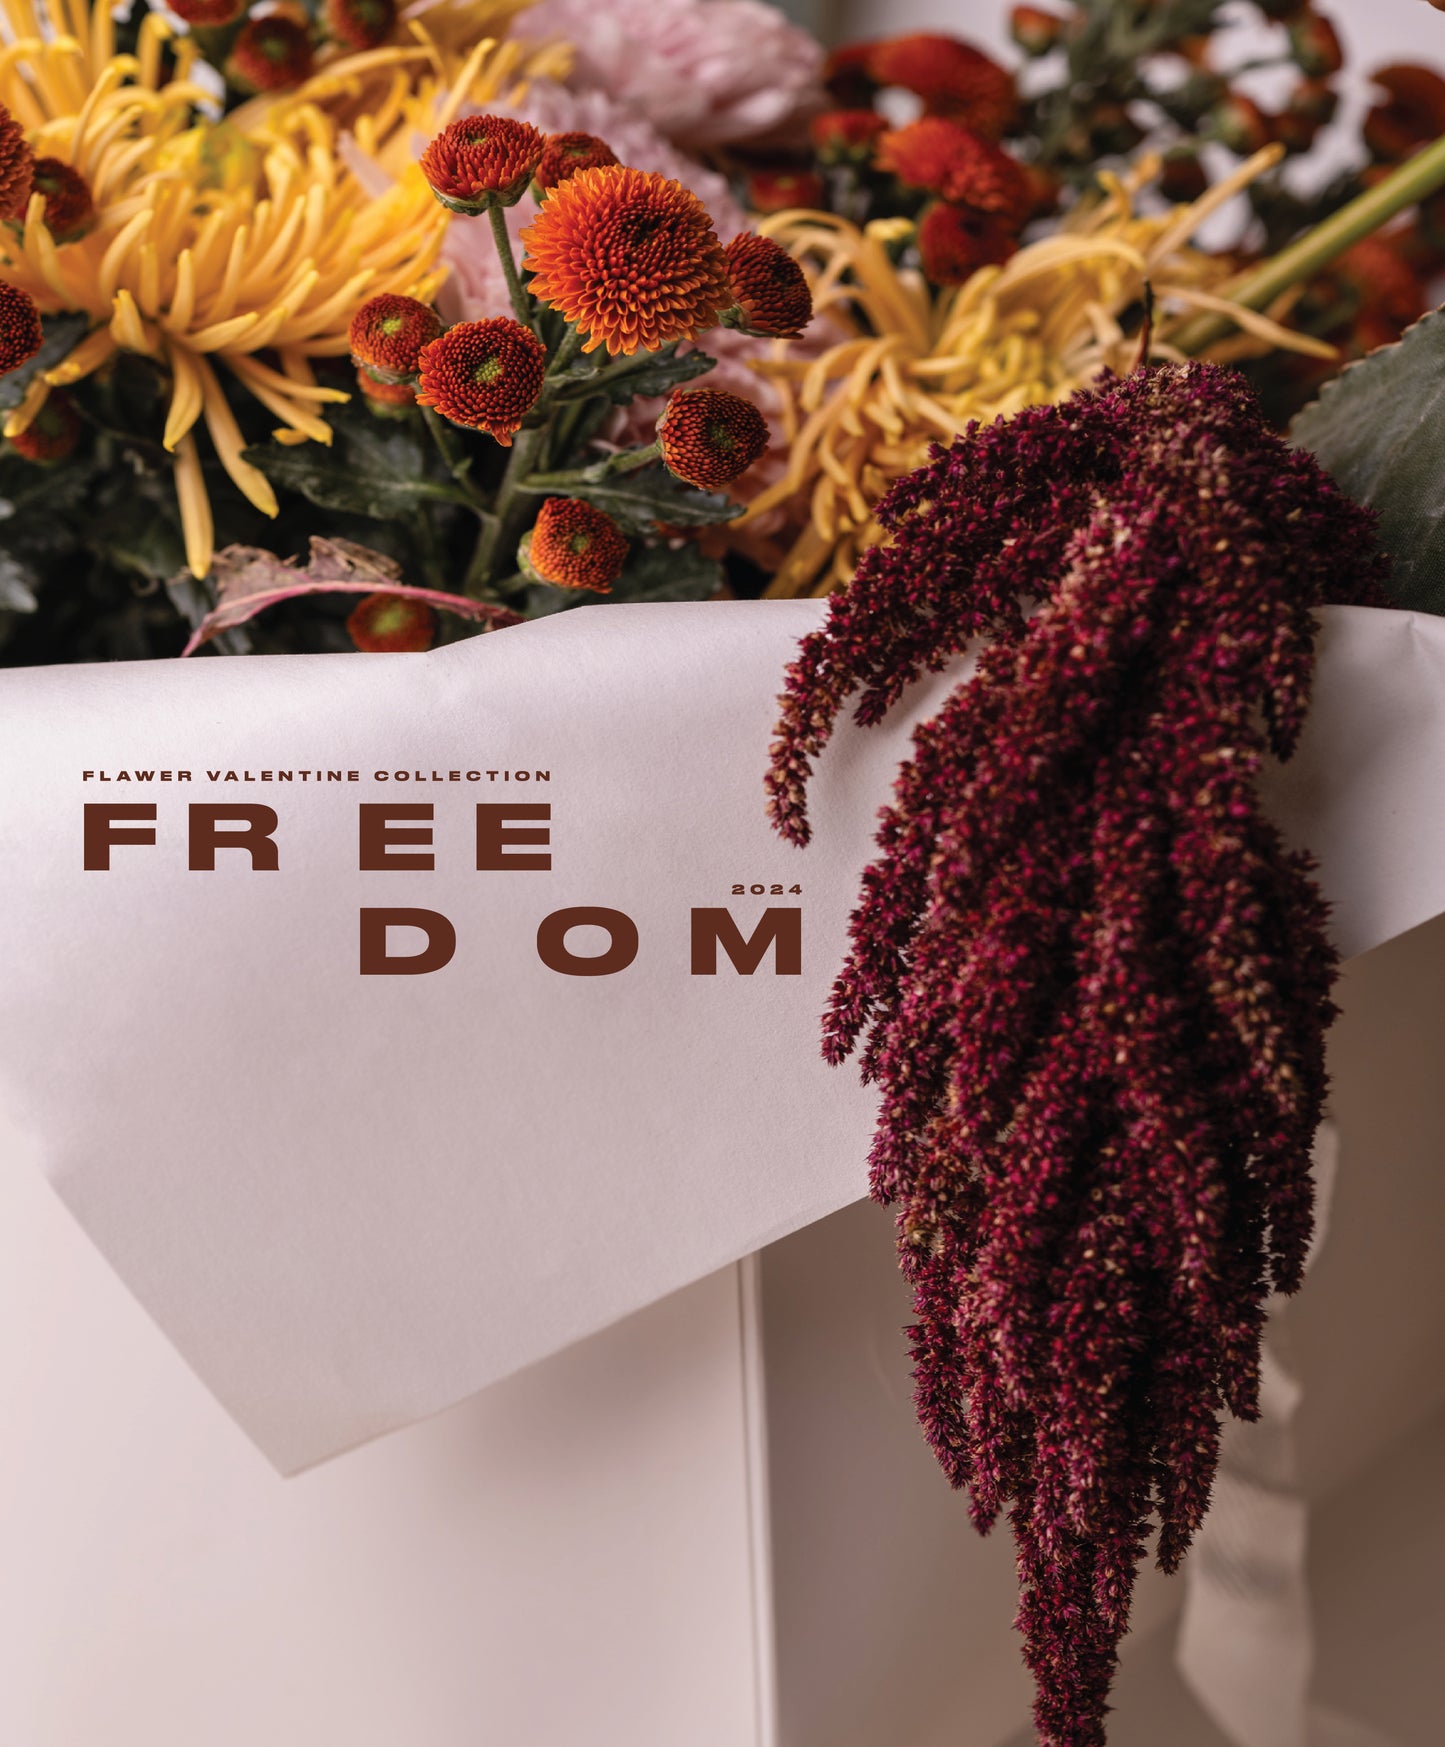 Freedom (Bespoke floral design)